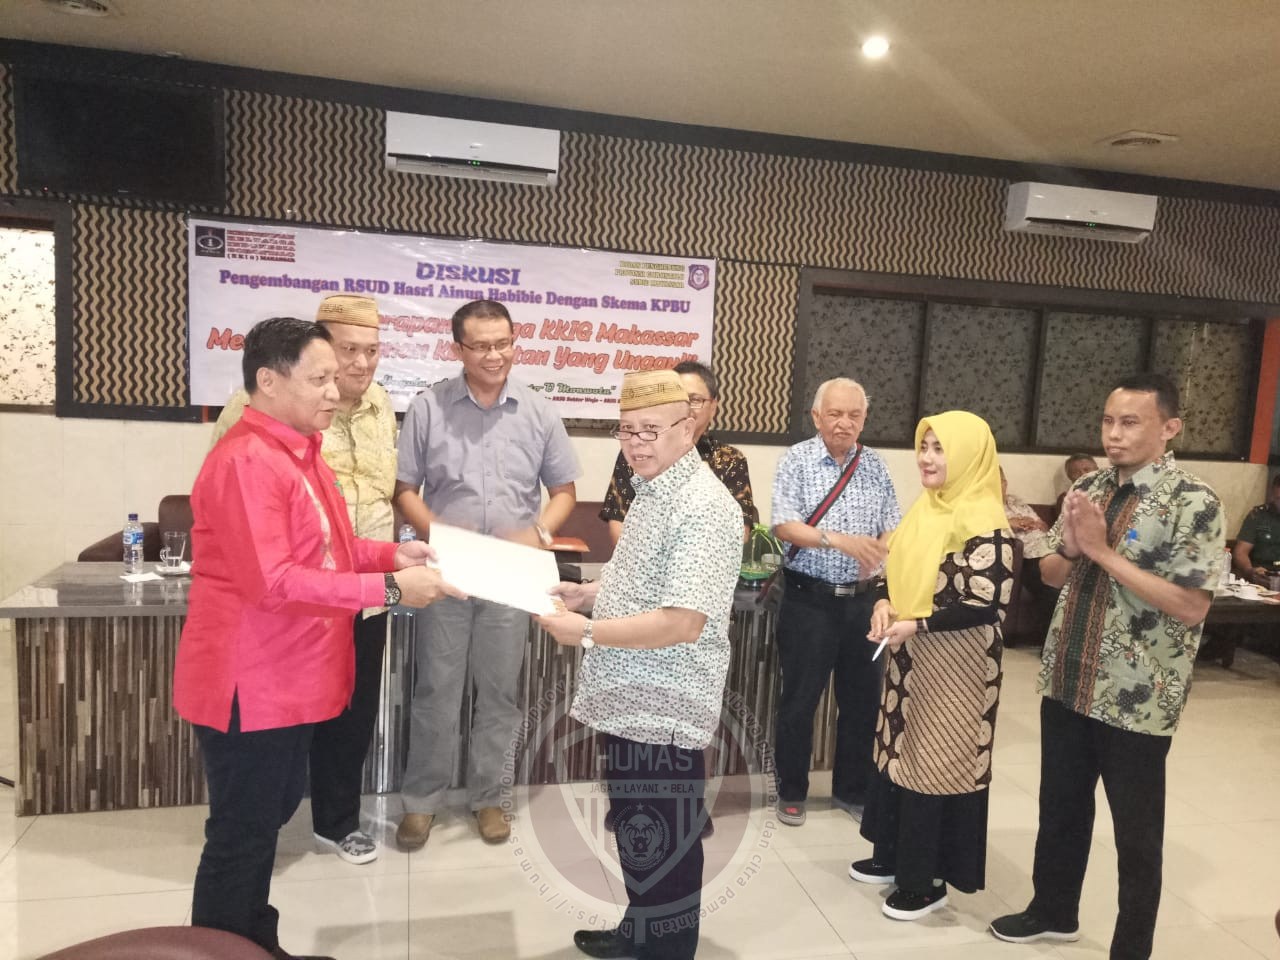 KKIG Makassar Dukung Penuh Pembangunan RSUD Ainun Habibie dengan Skema KPBU